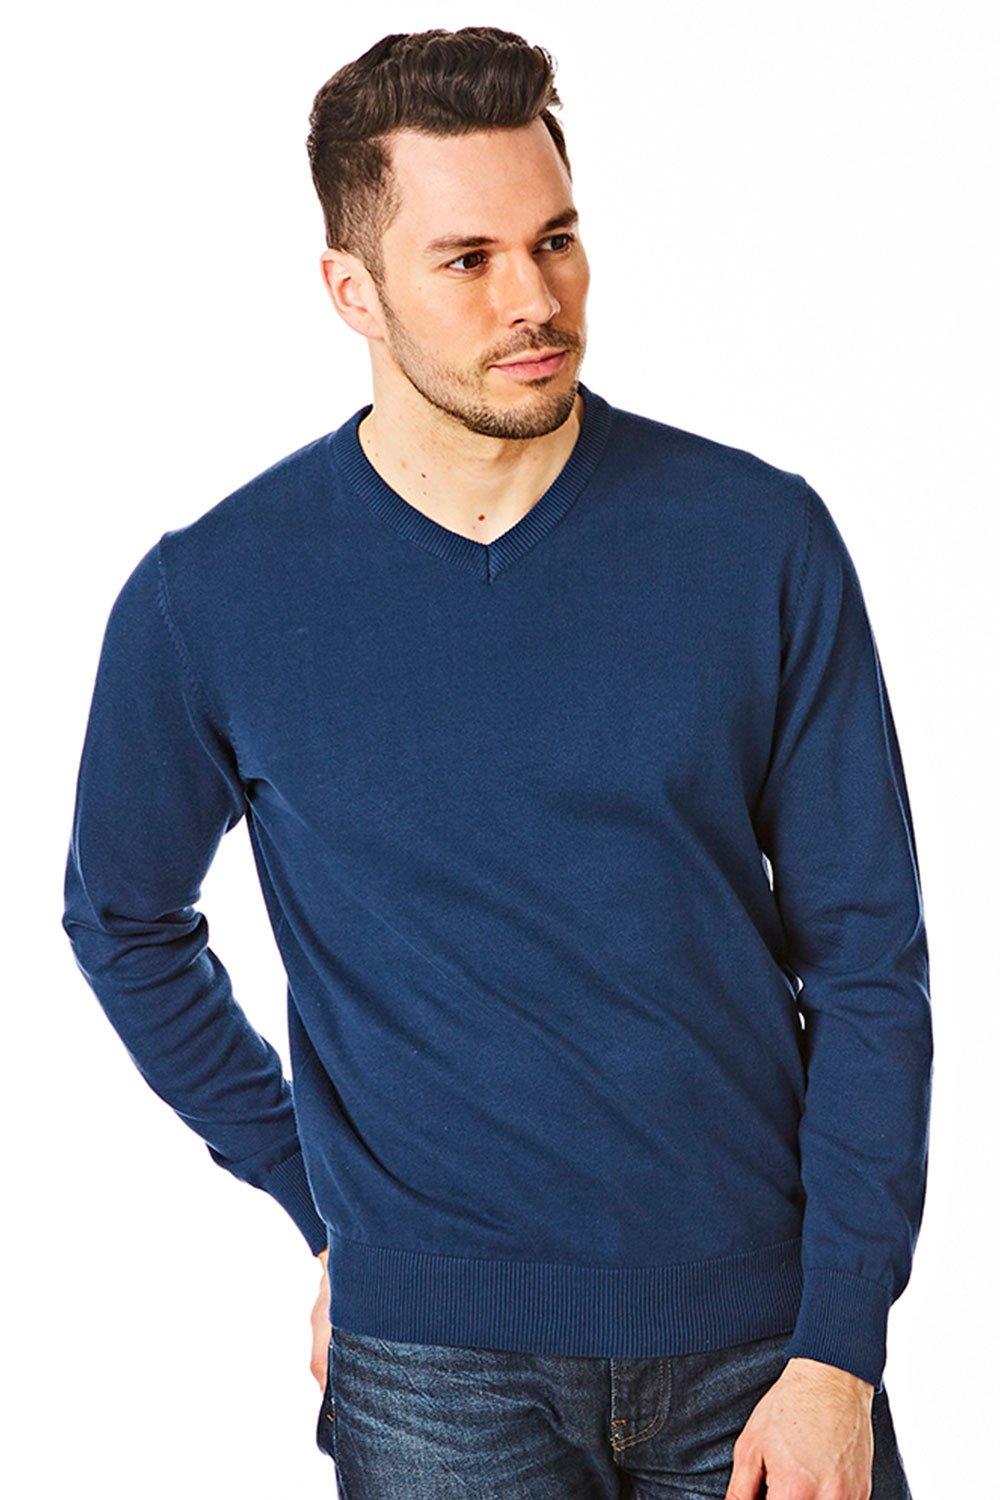 Вязаный джемпер с V-образным вырезом CastlePoint, синий модный мужской вязаный приталенный свитер жилет майка однотонный пуловер без рукавов с v образным вырезом джемпер свитеры жилеты одежда